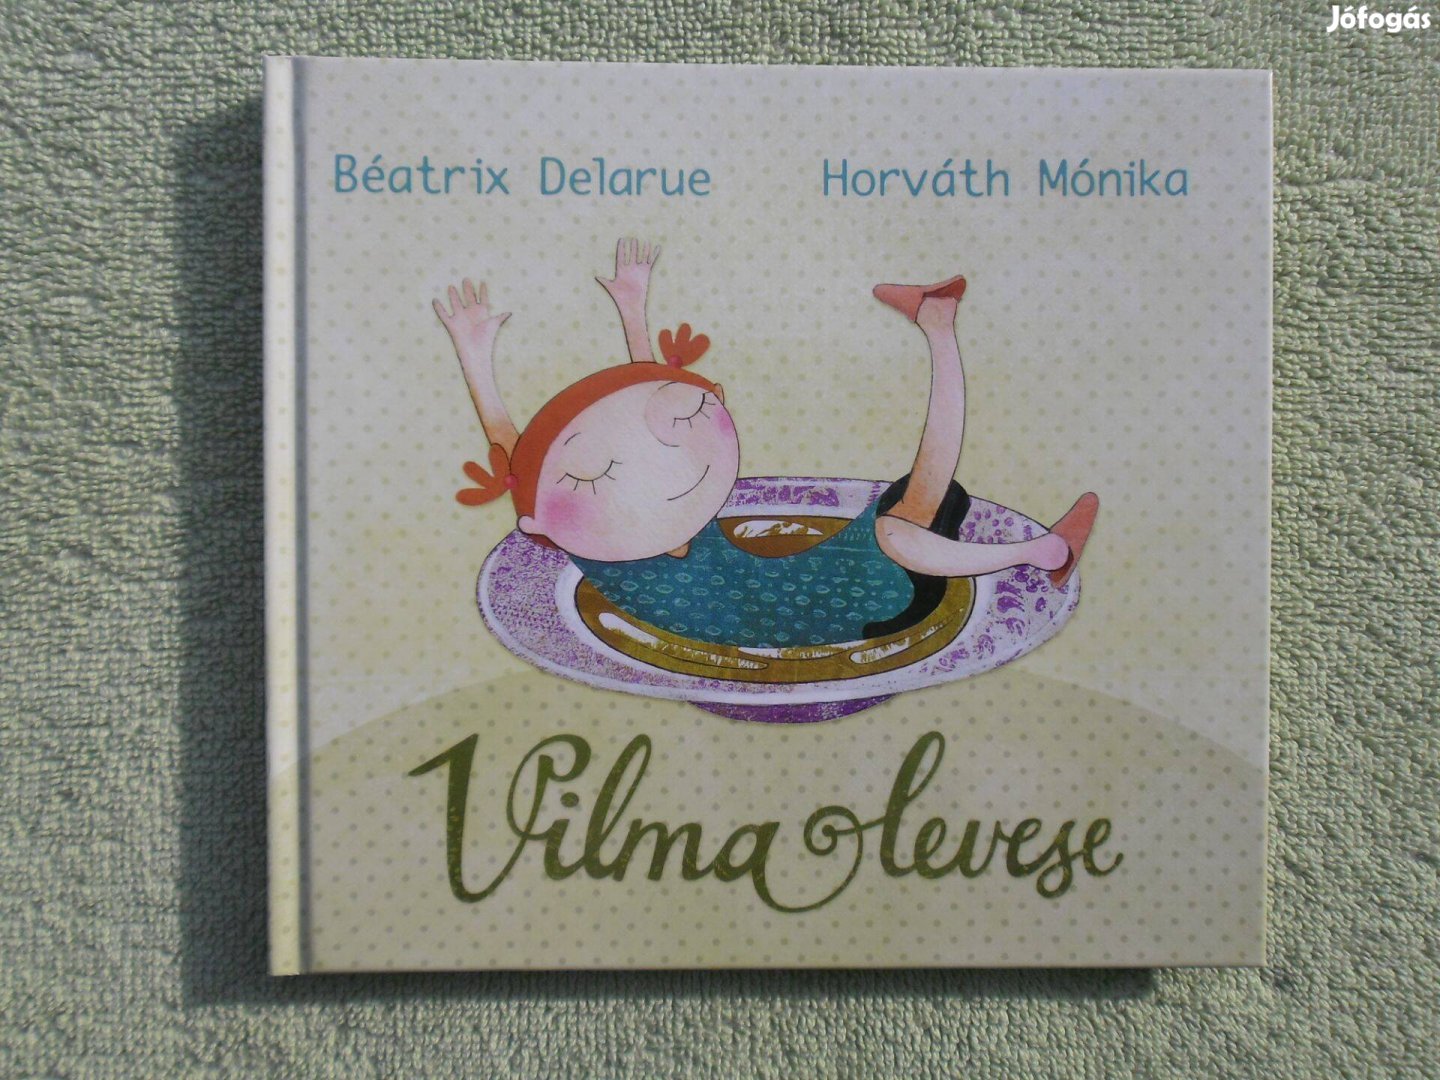 Béatrix Delarue: Vilma levese